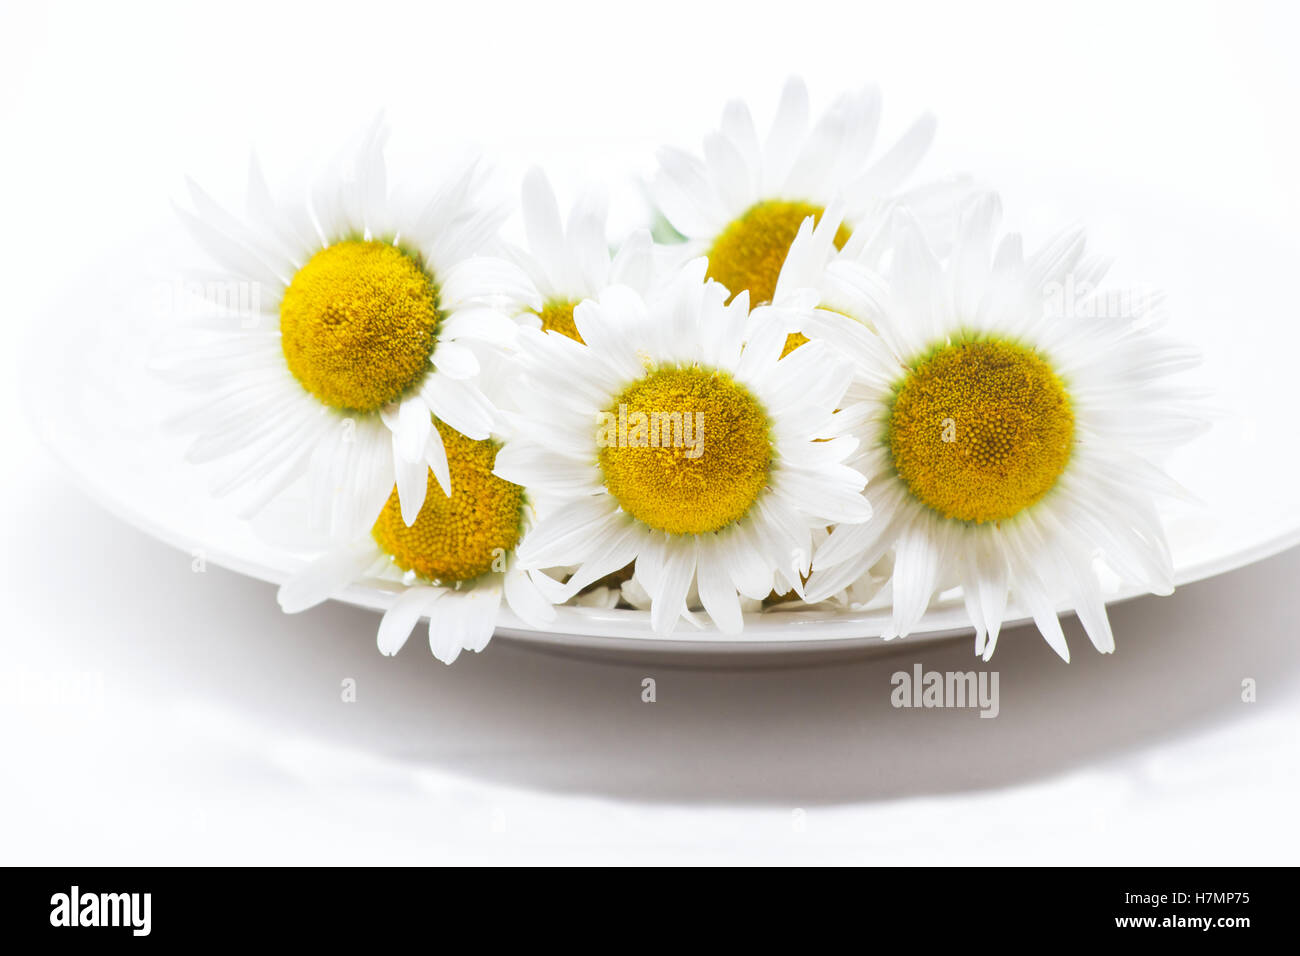 White daisies ( bellis perennis) on white background Stock Photo